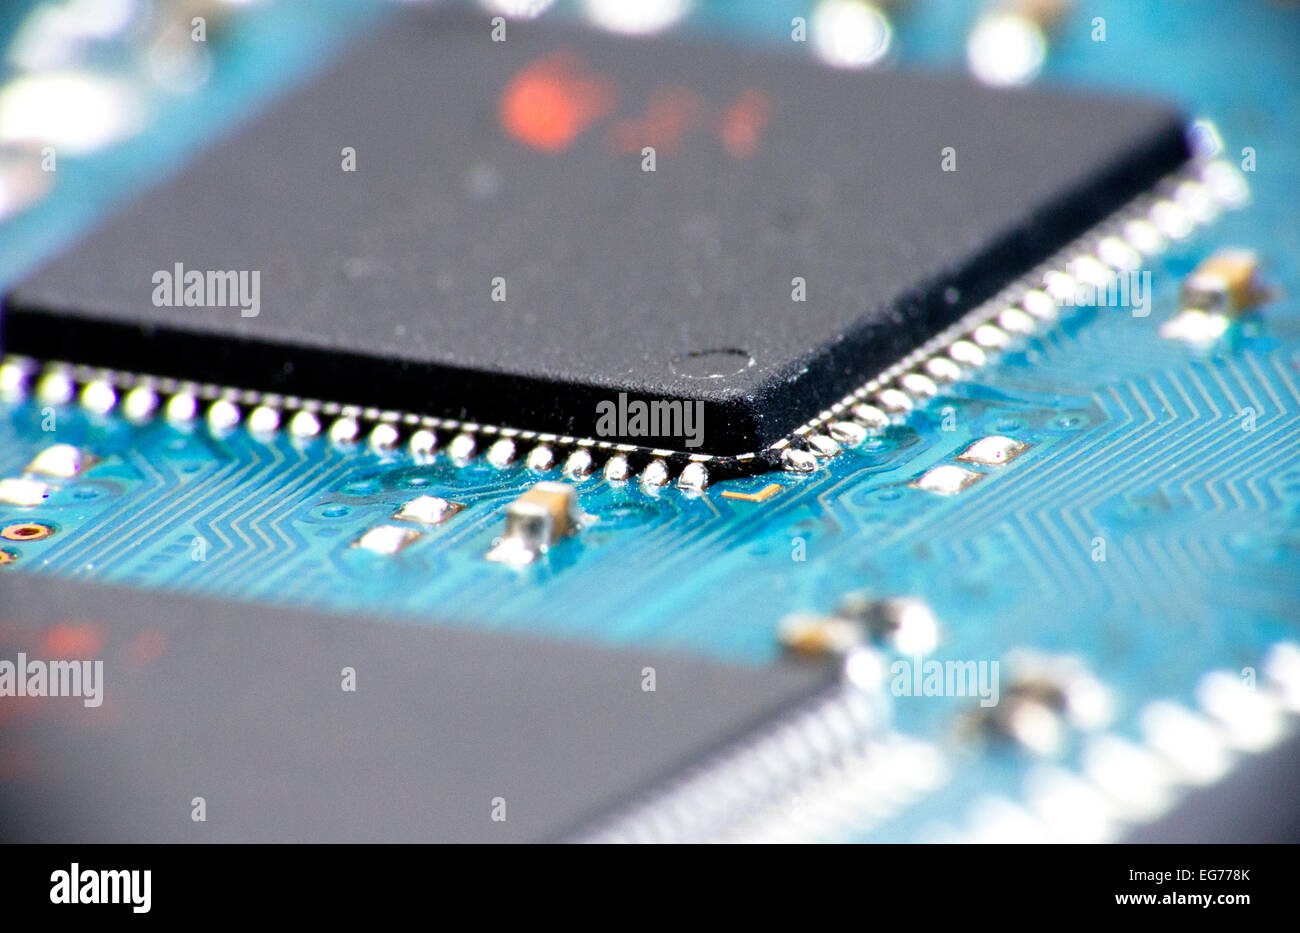 Die inneren Verschleißteile einer Compact Flash Memory Card mit Mikrochips und Schaltungen Stockfoto